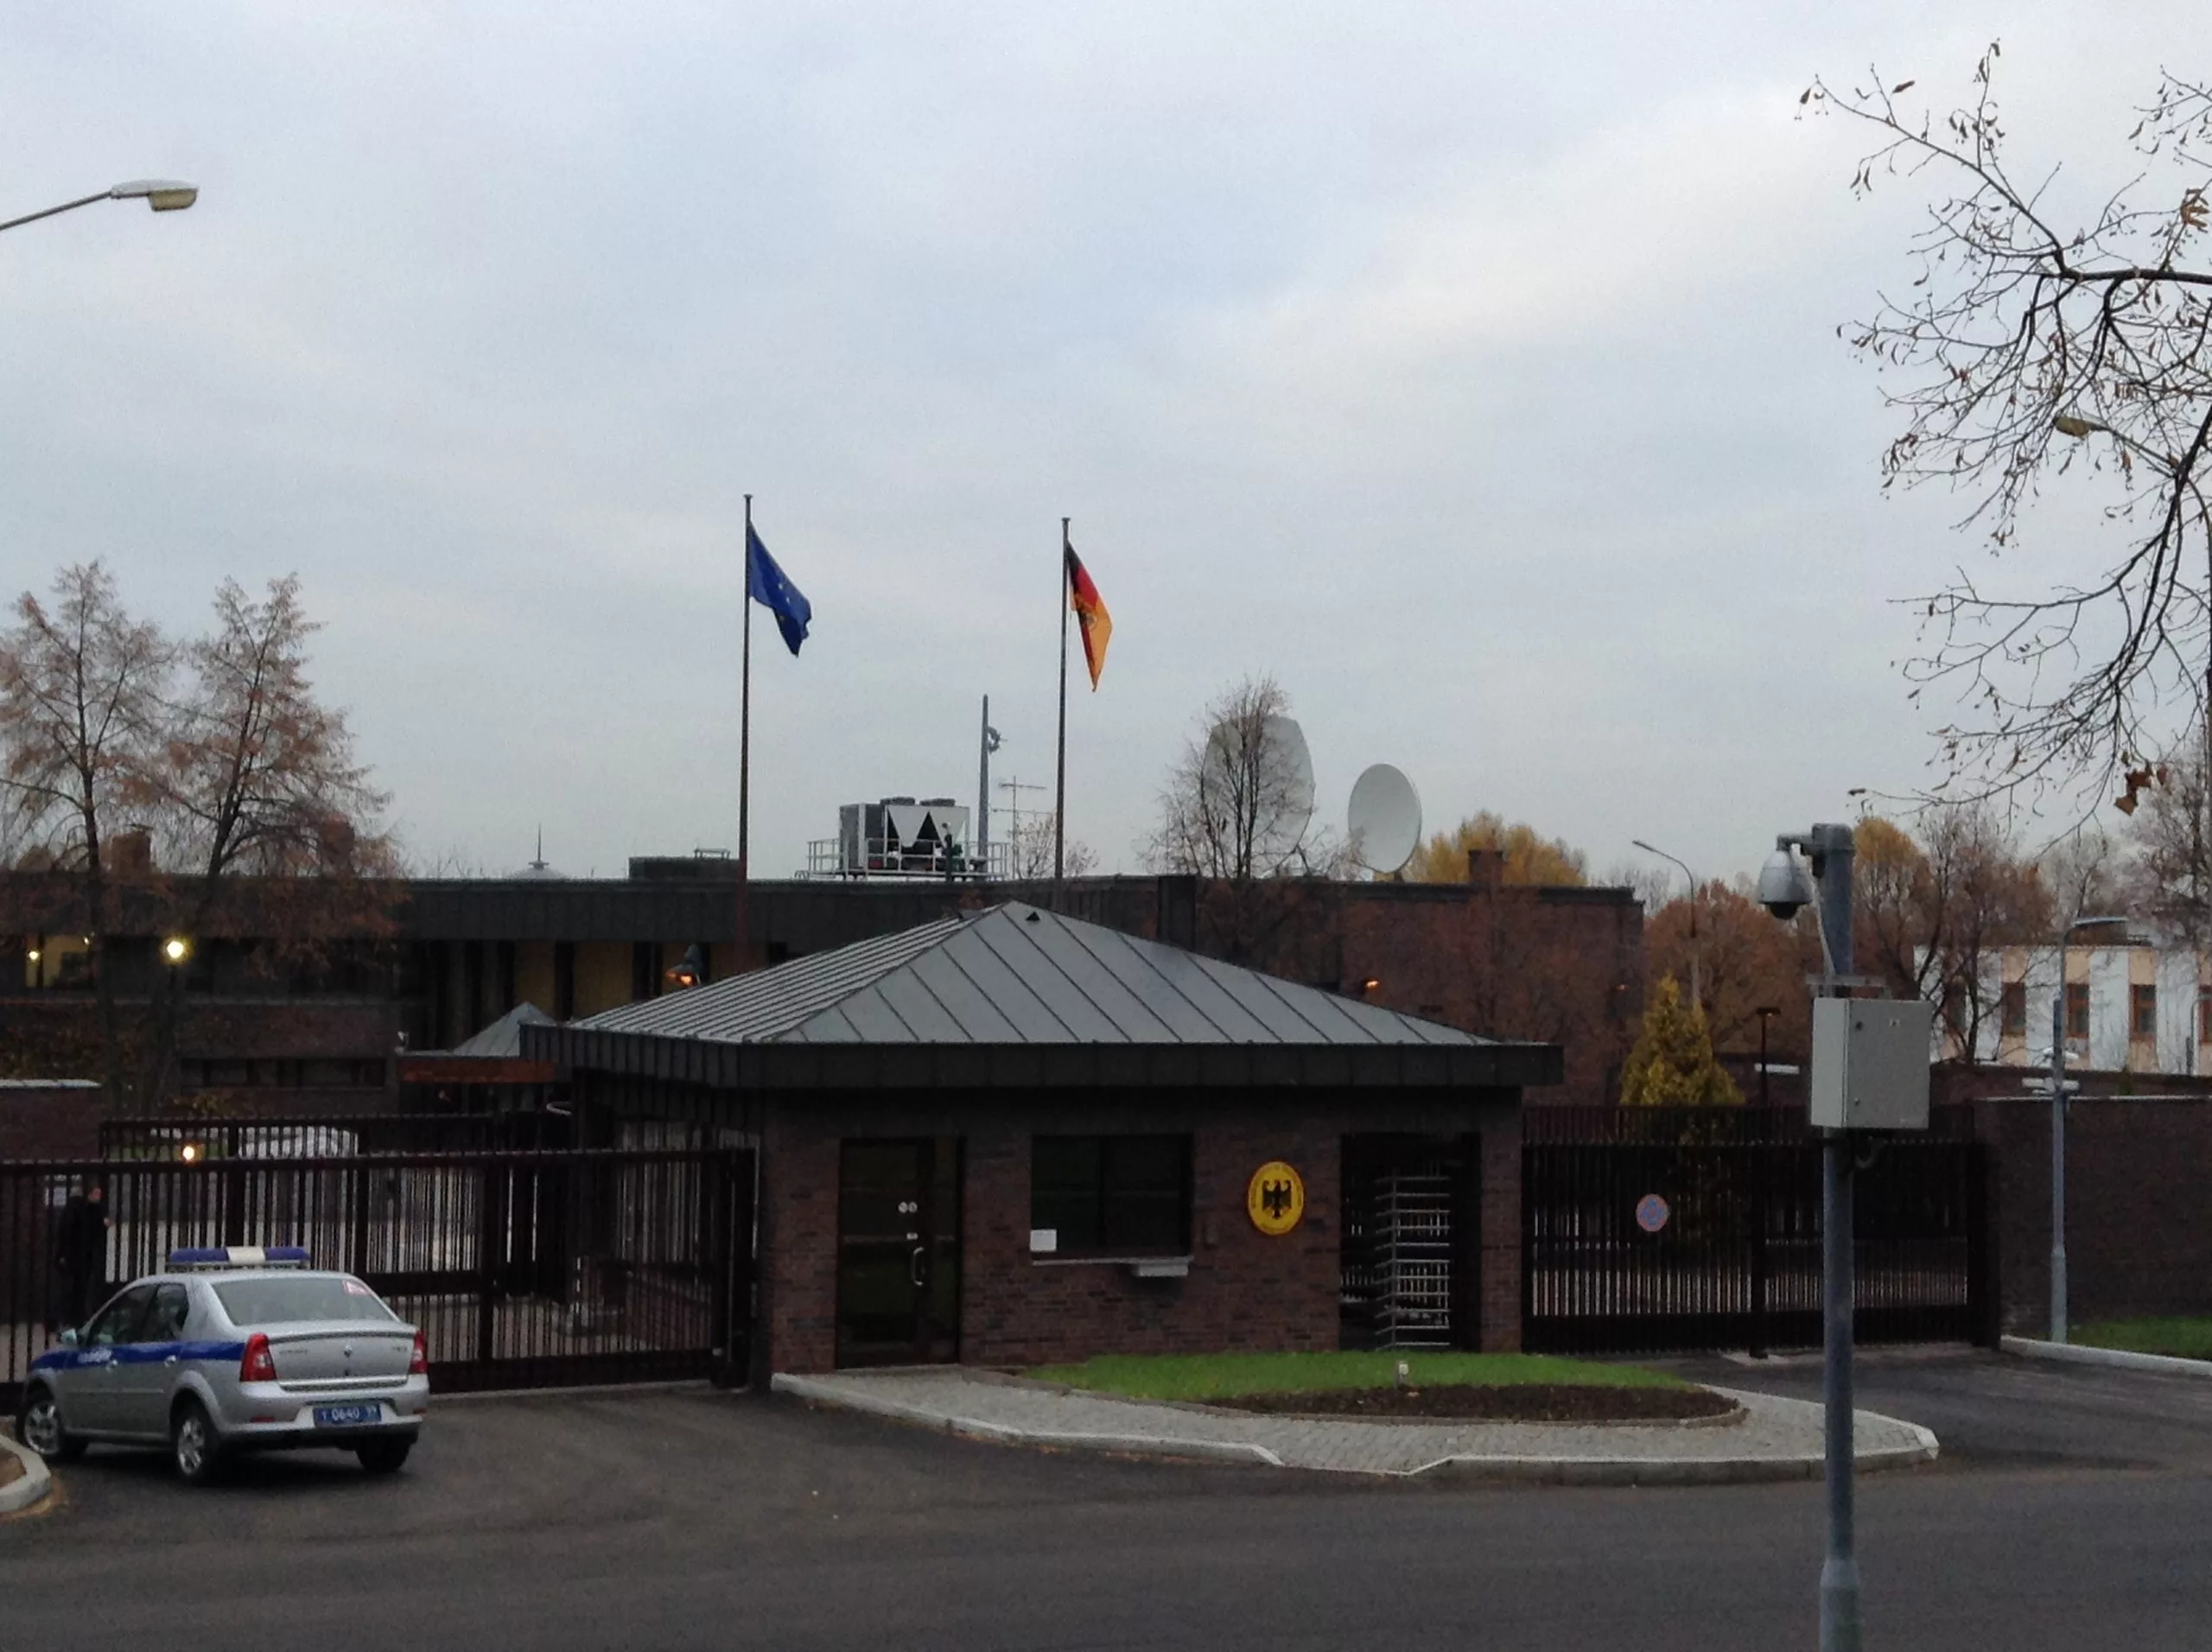 Посольство фрг в москве